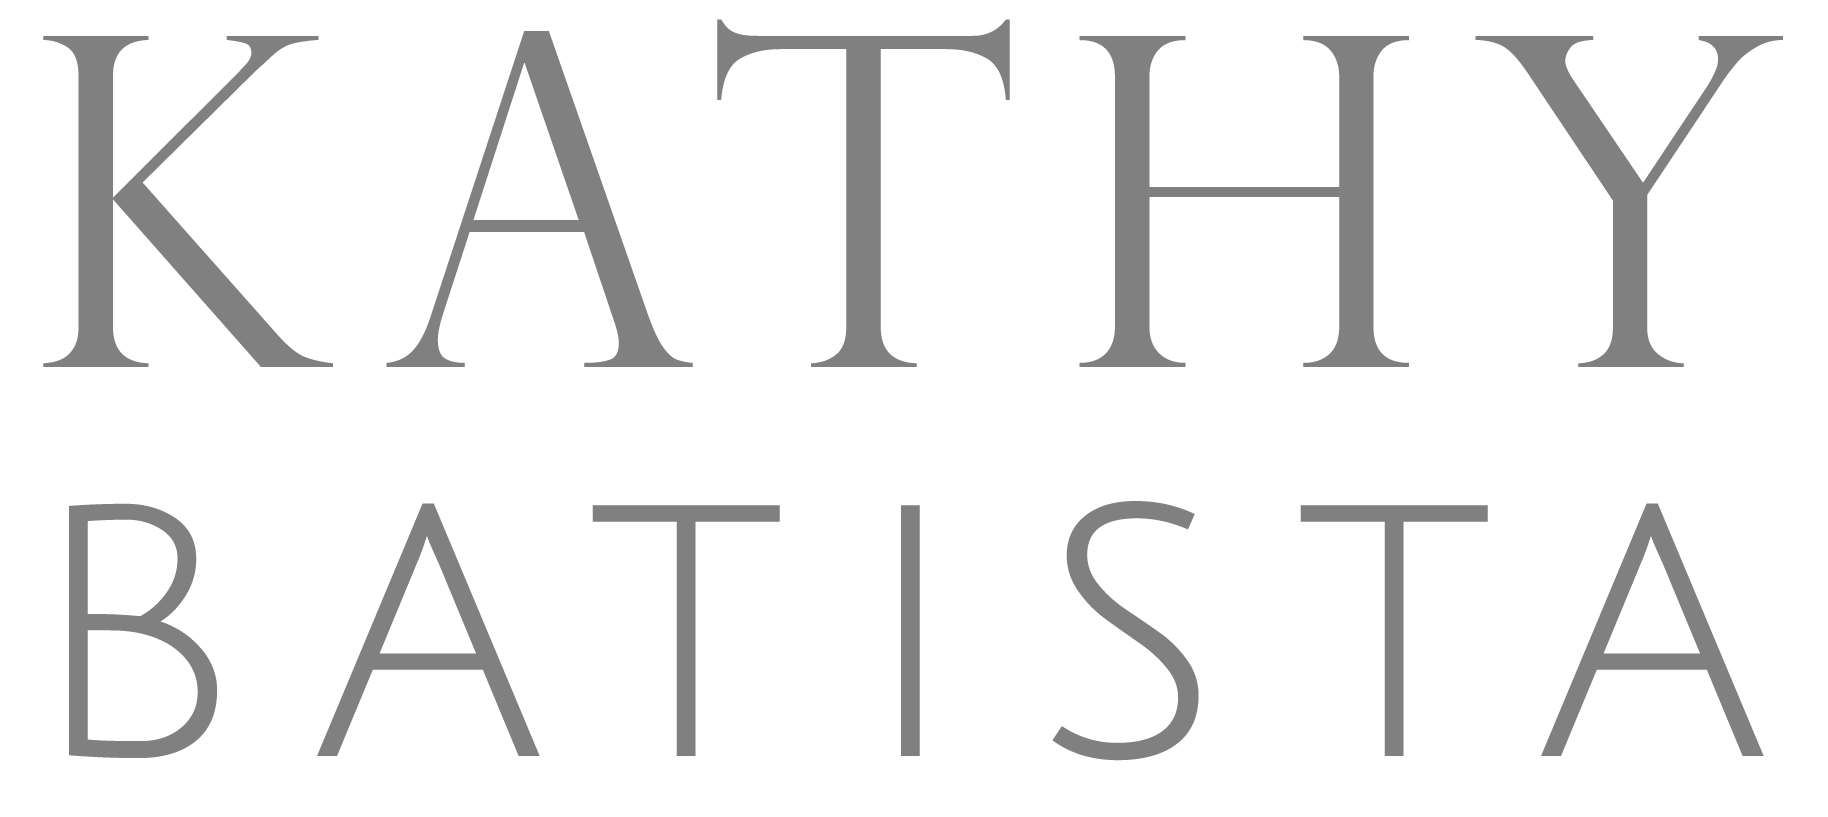 logo-kathy-batista-branding-19.png